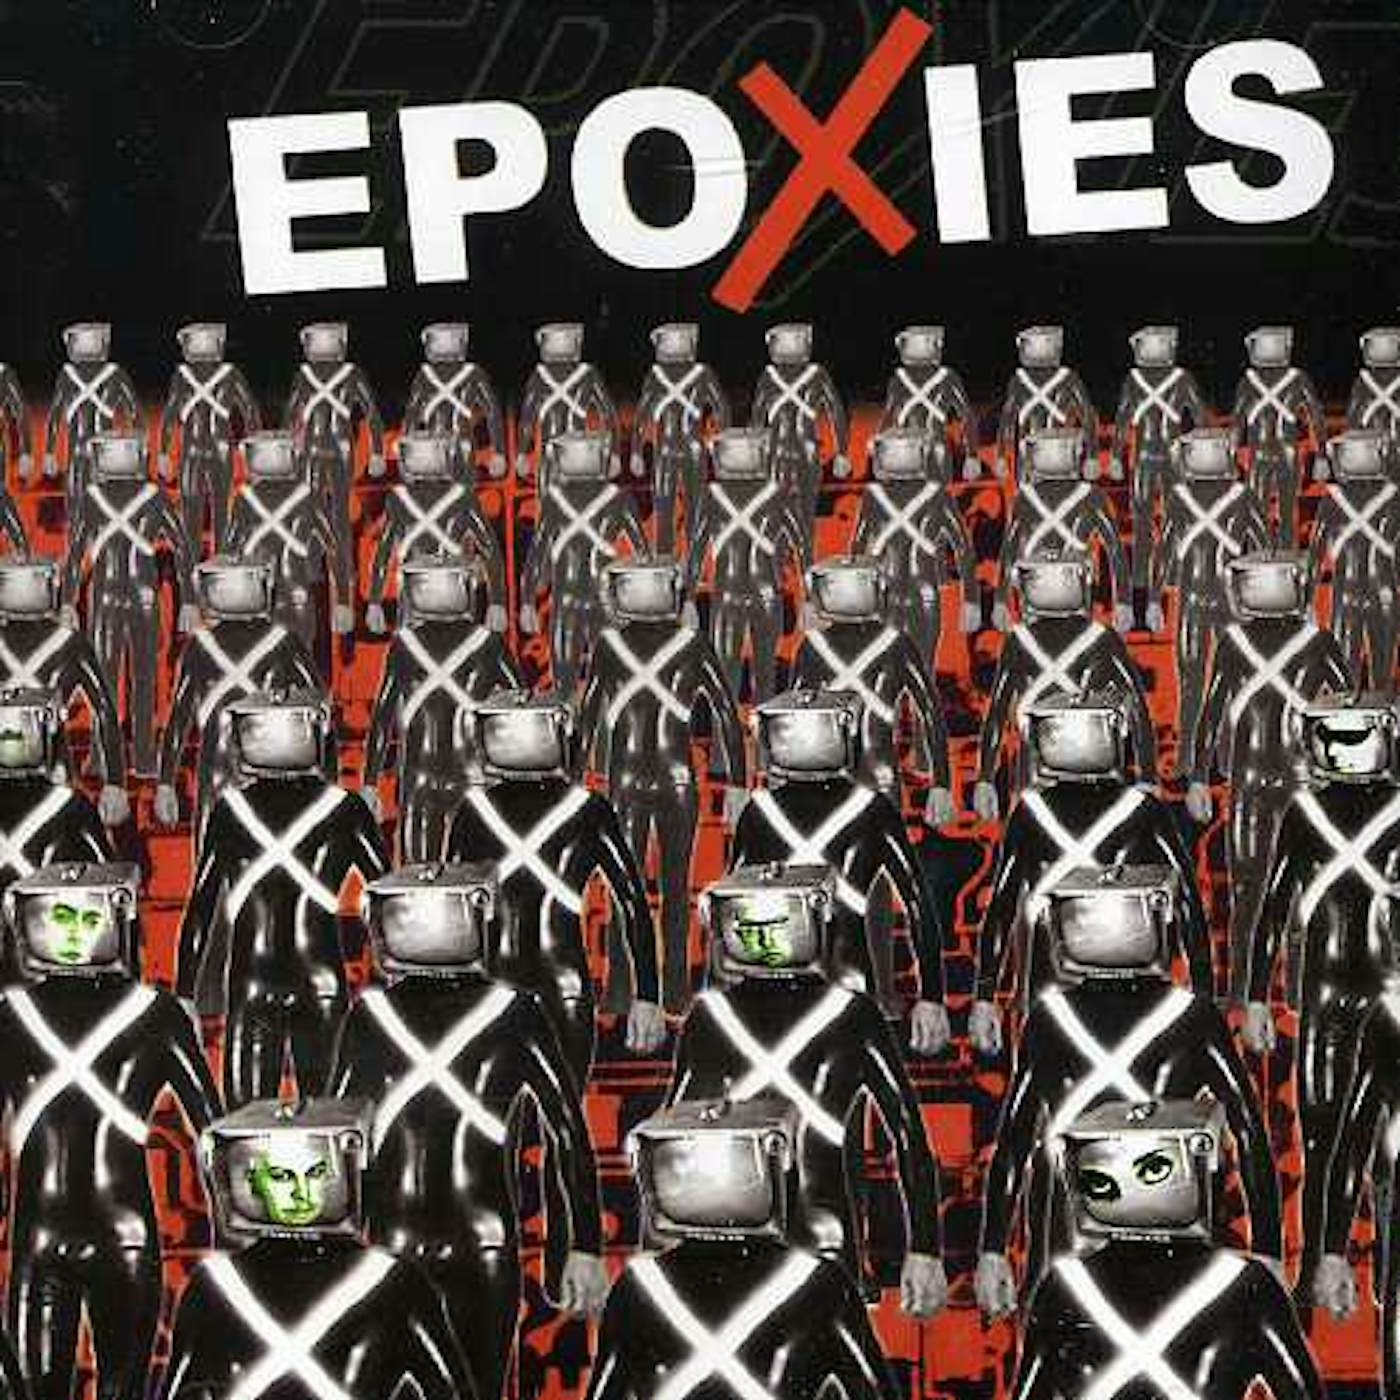 Epoxies SYNTHESIZED CD